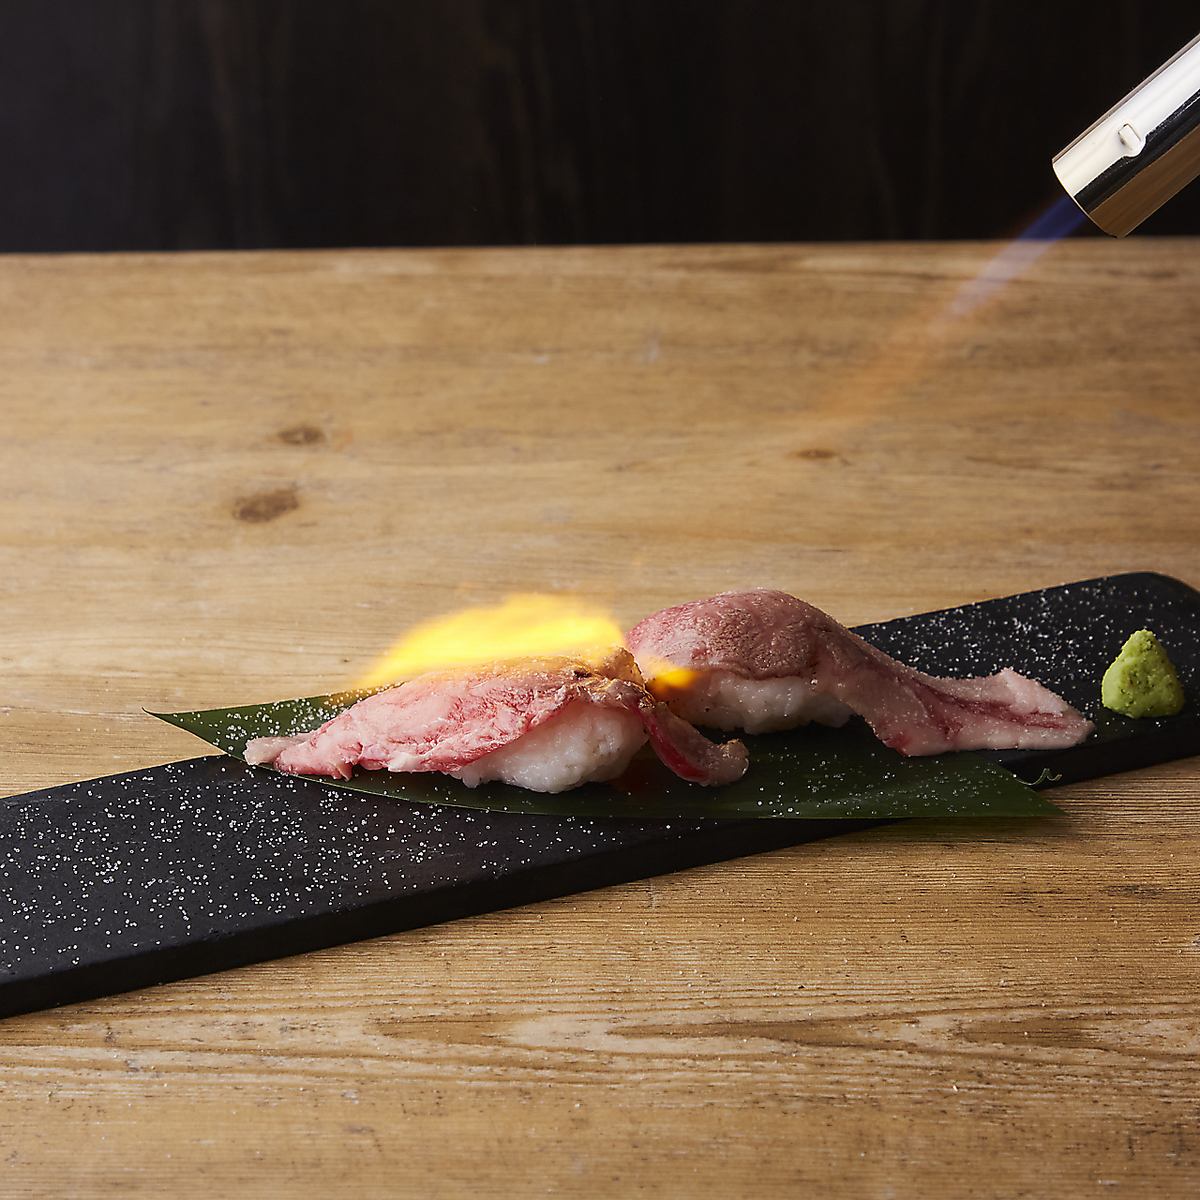 烤鸡肉串是北陆富山的特色菜肴和开胃菜。享受丰富的菜单◎